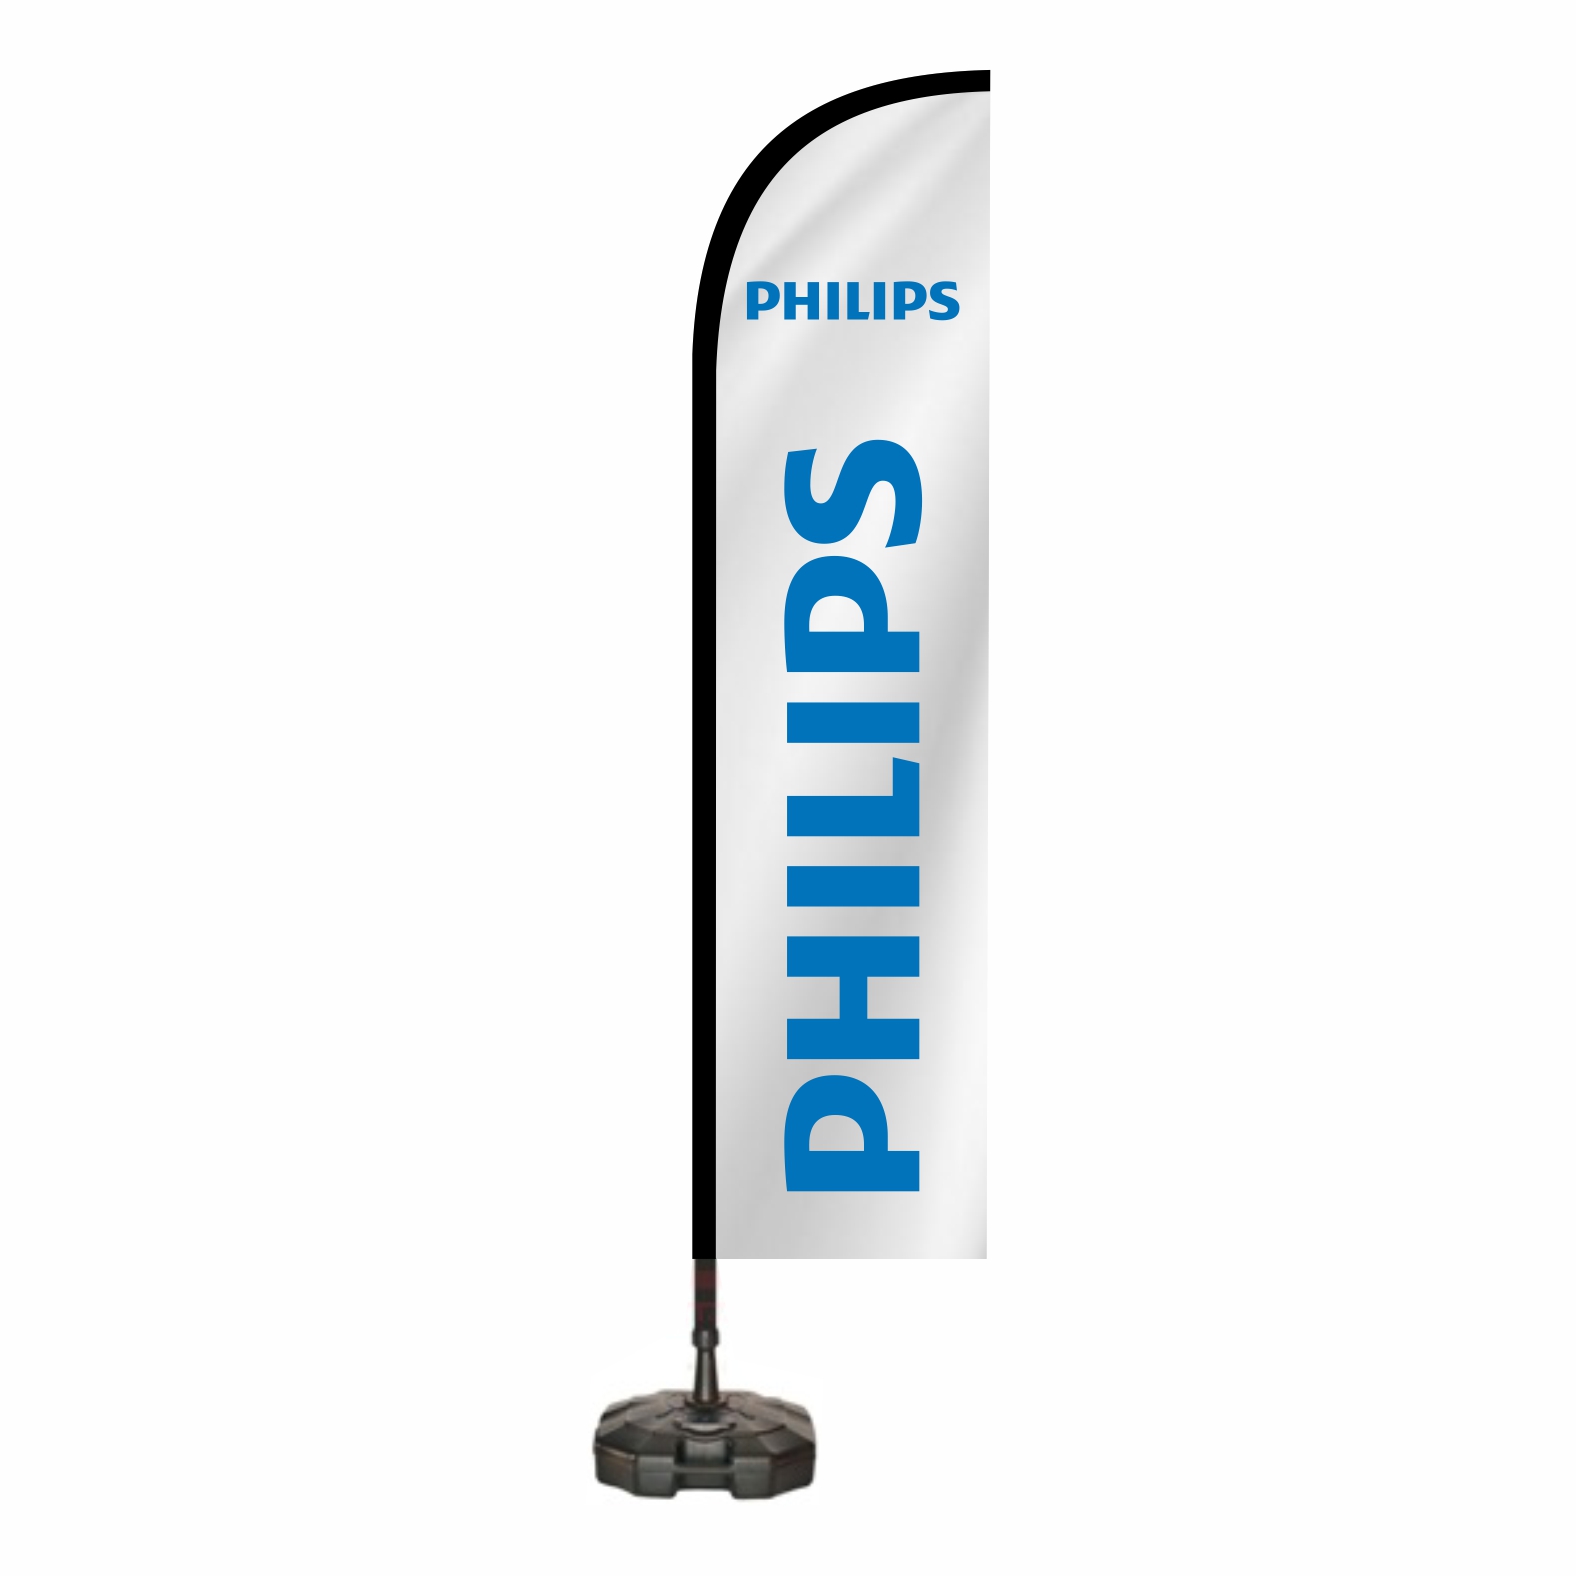 Philips Dubal Bayraklar